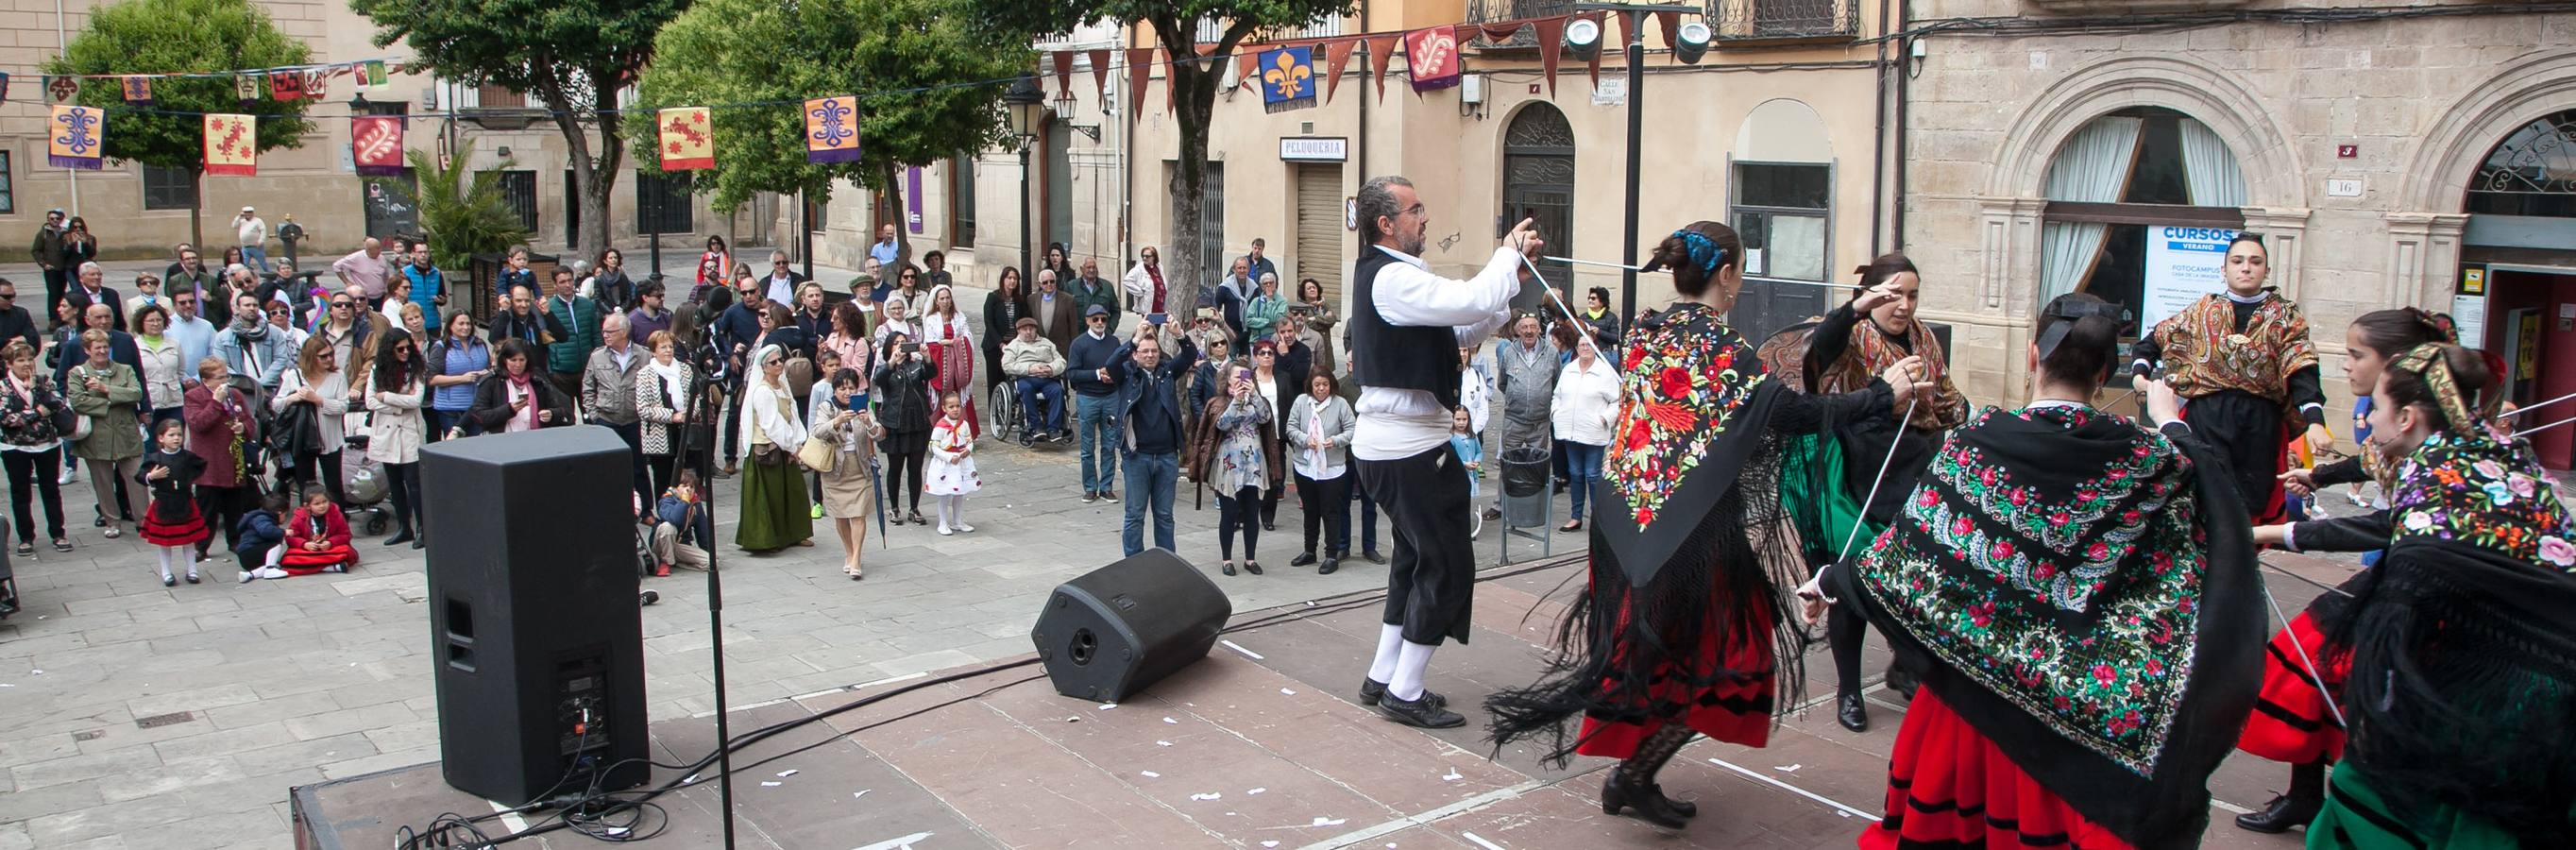 Fotos: Exaltación del folclore en la plaza de San Bartolomé